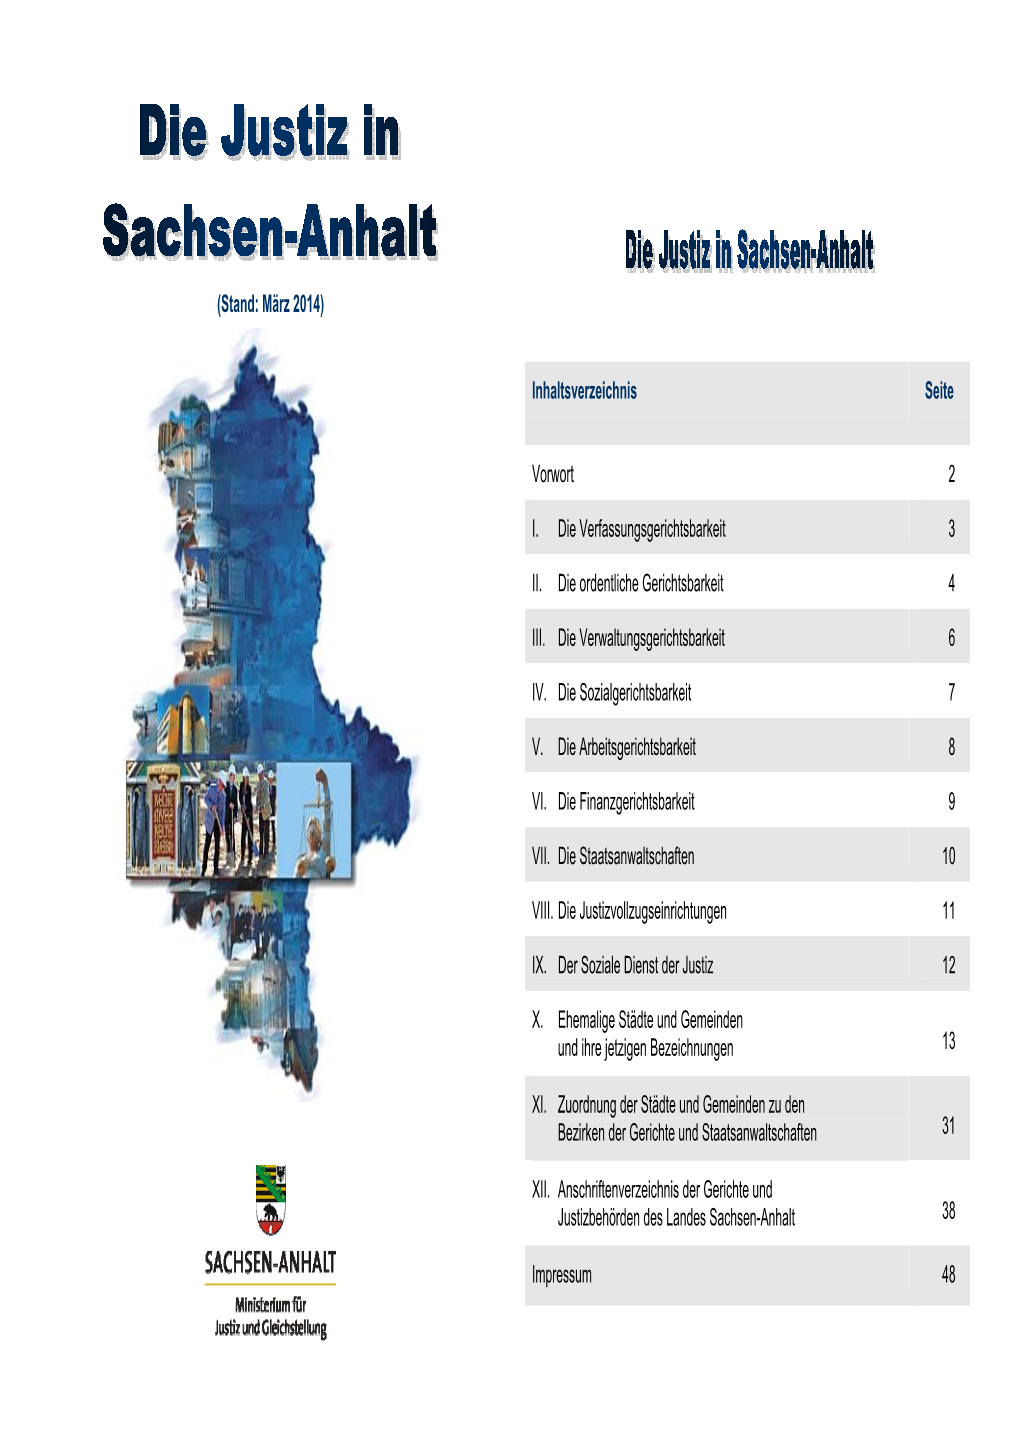 Die Justiz in Sachsen-Anhalt